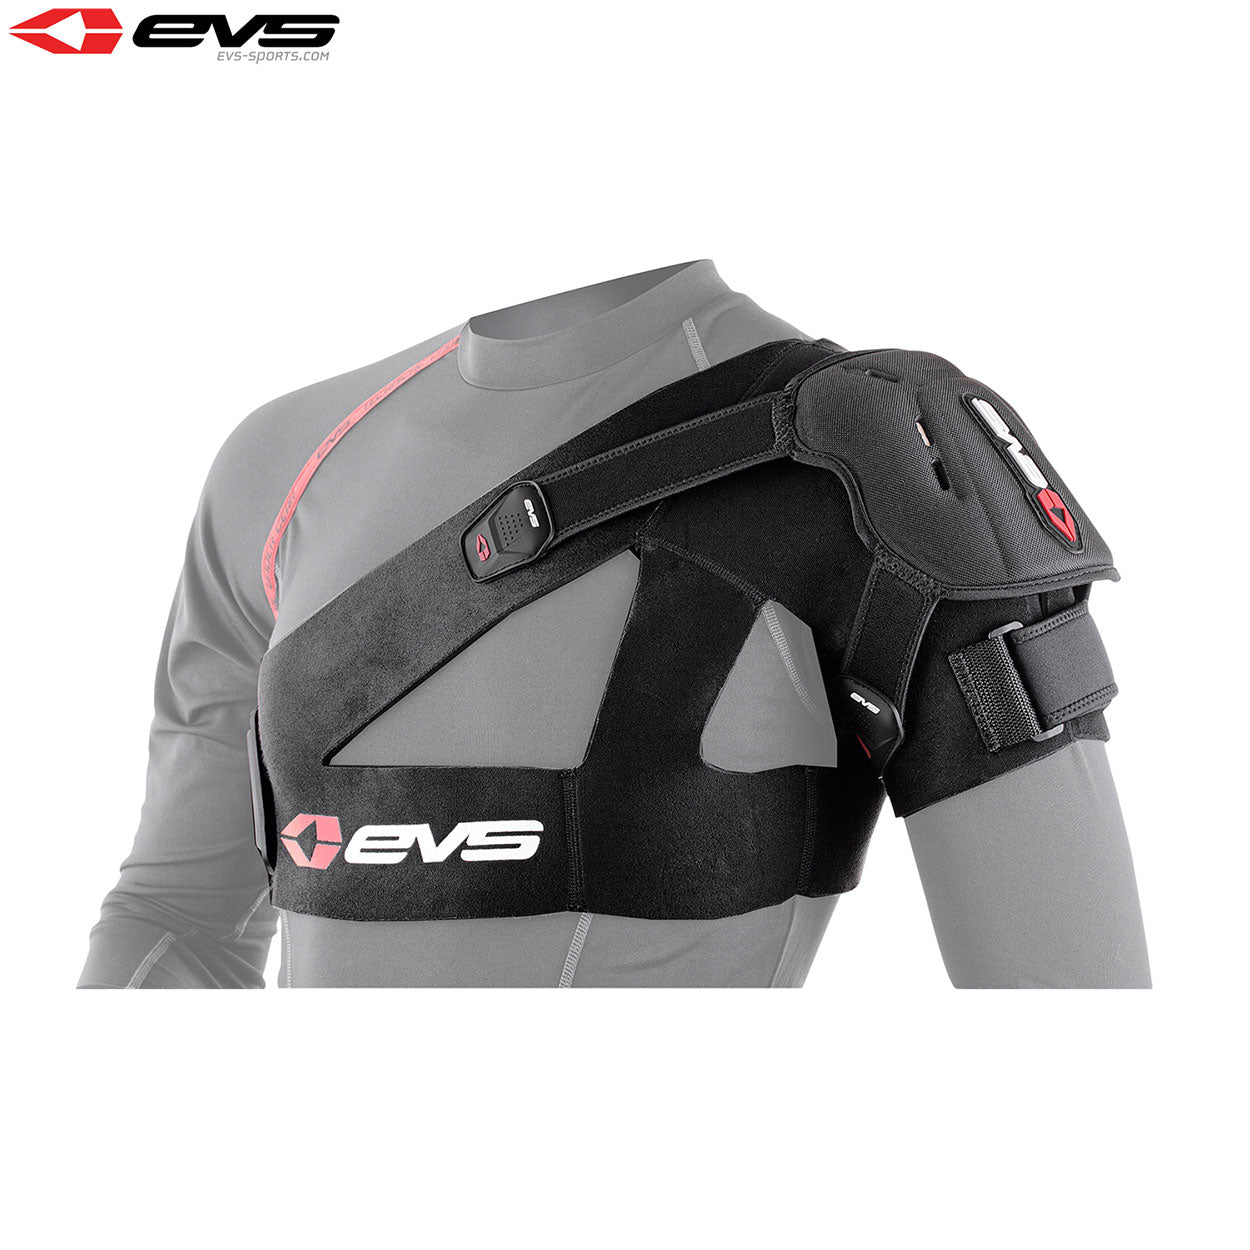 EVS SB04 Shoulder Stabiliser Inc Protection Cup Adult (Black) Size 2XLarge - XXL / Black - EVS